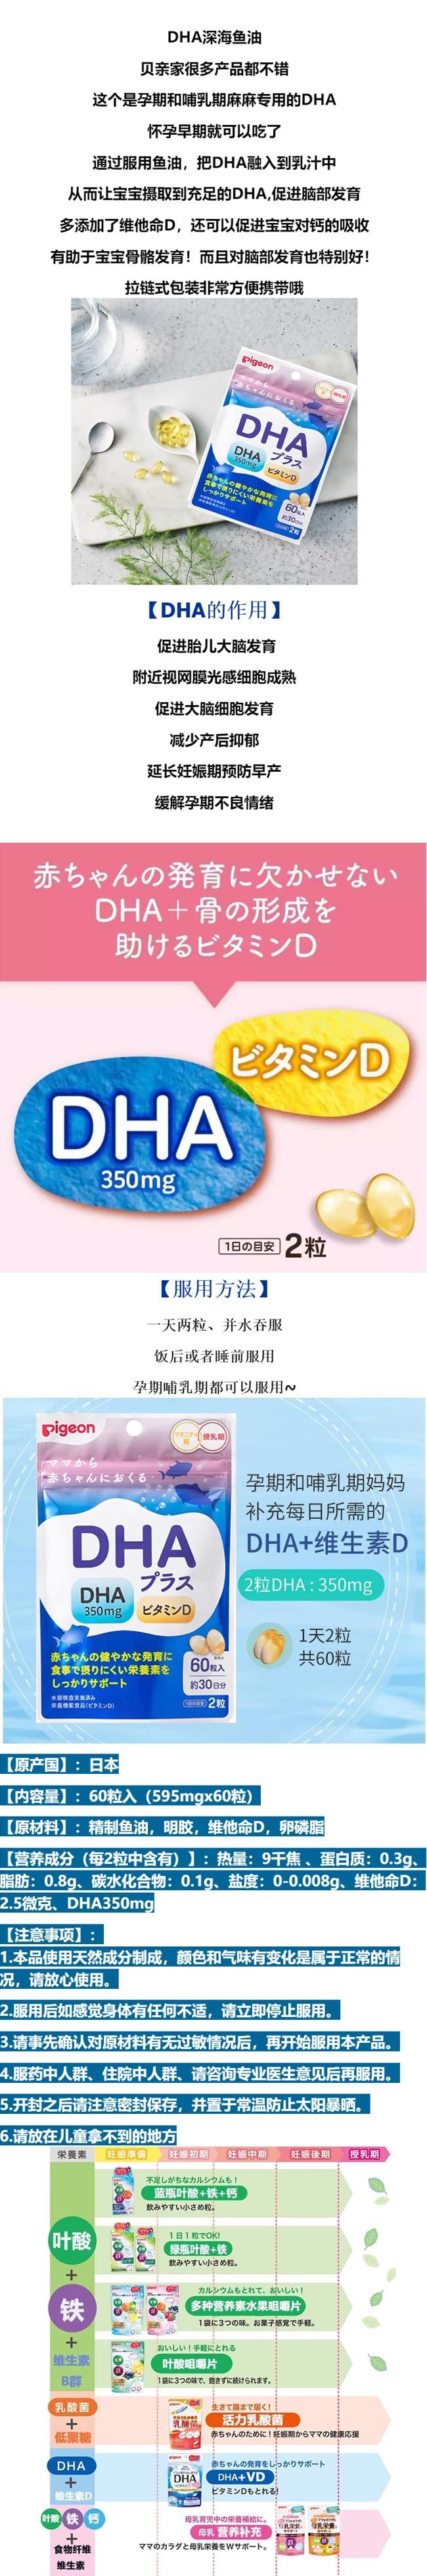 【日本直效郵件】PIGEON貝親 哺乳期DHA維生素D補充劑 60粒